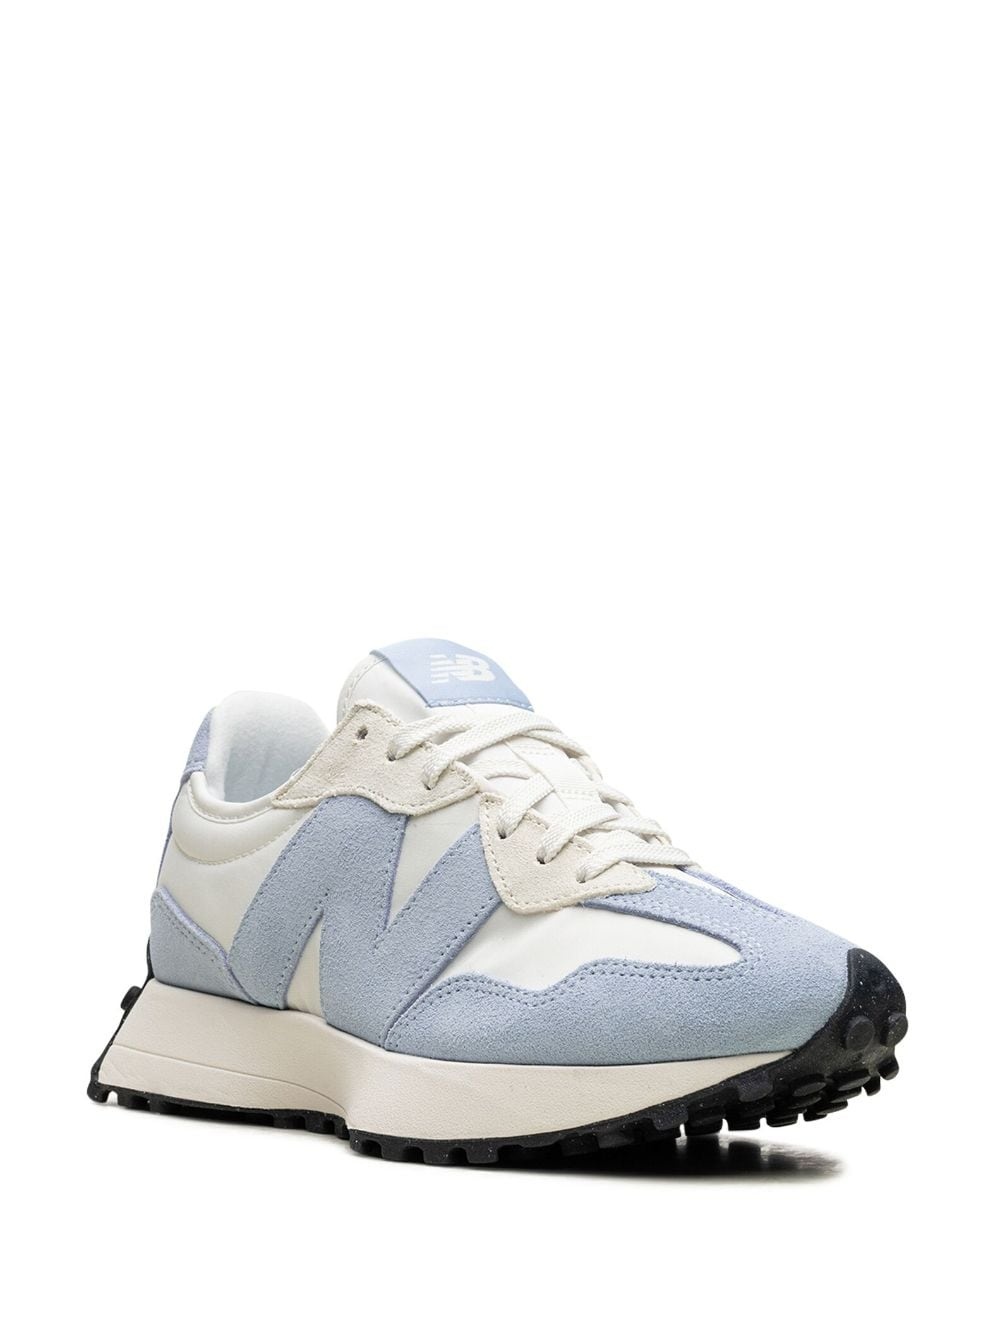 327 "White/Light Blue" sneakers - 2